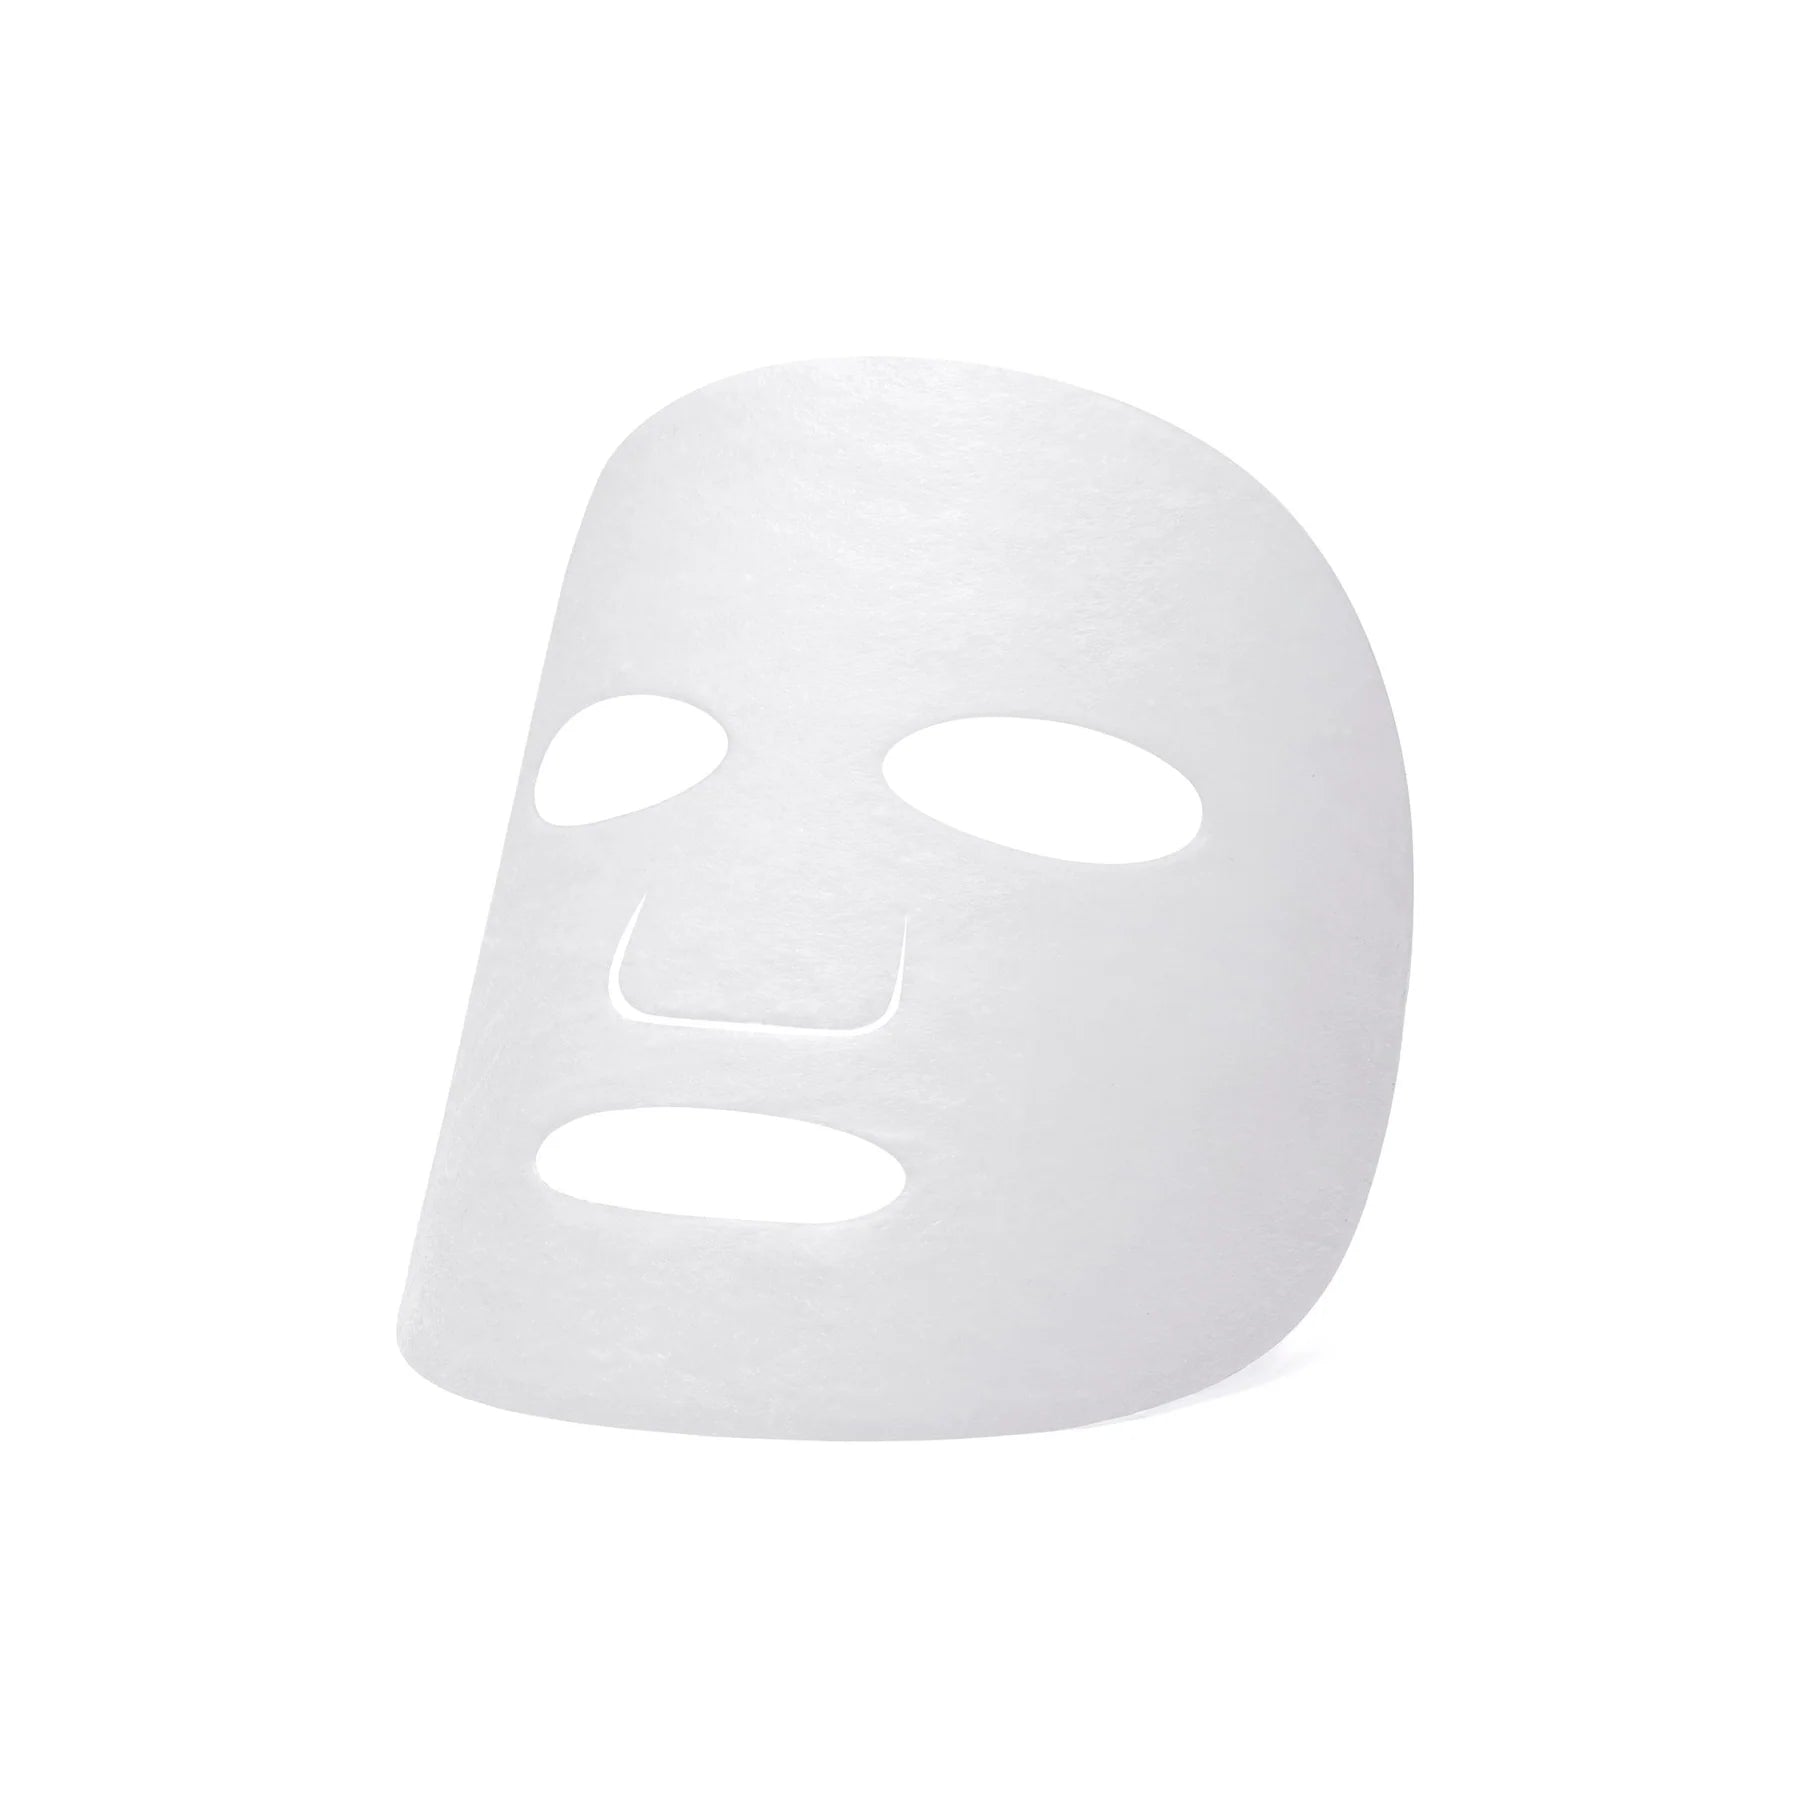 ONEOSEVEN Avocado Cuddle Sheet Mask 25g * 5ea